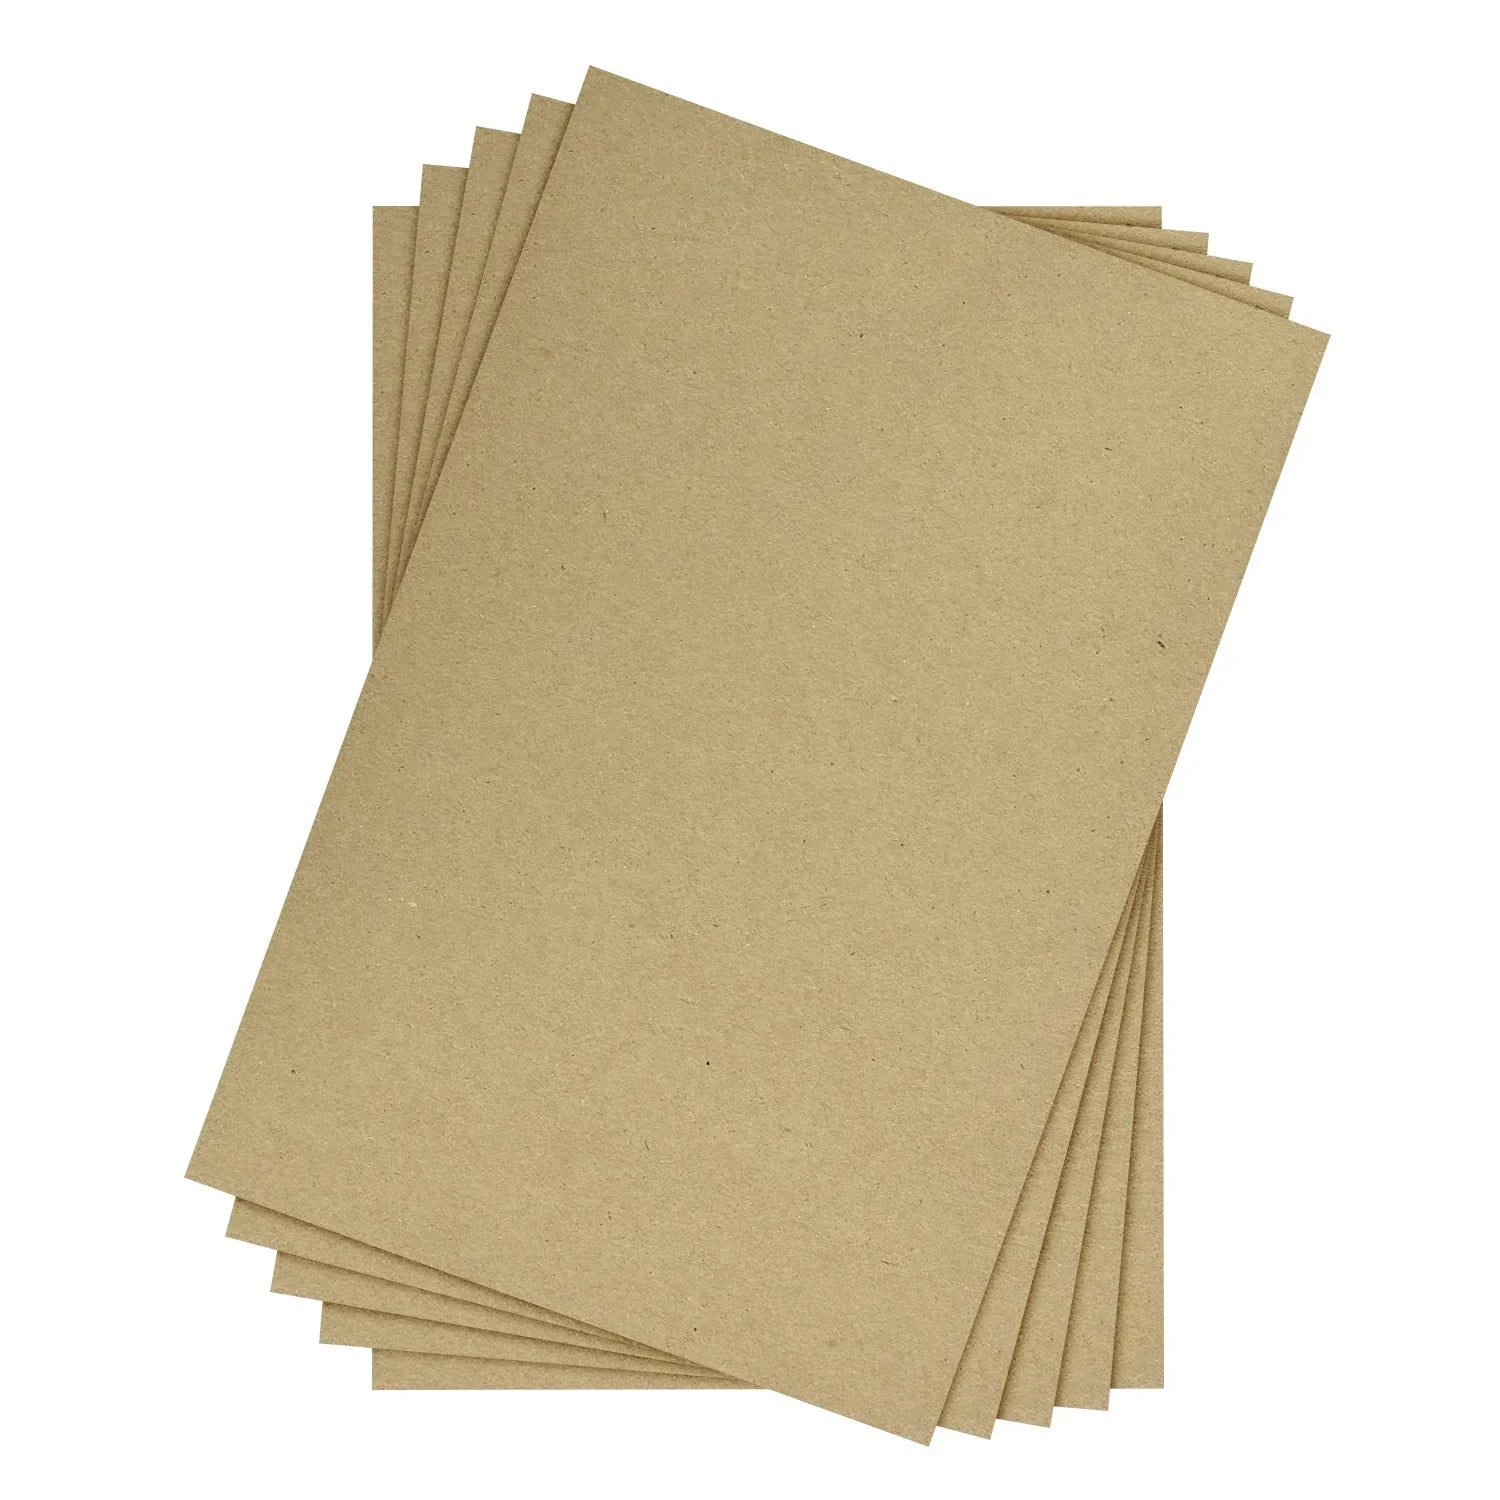 12 x 18" Brown Kraft Chipboard | Medium Weight 30Pt. (624gsm) Cardboard Sheets - 50 per Pack FoldCard